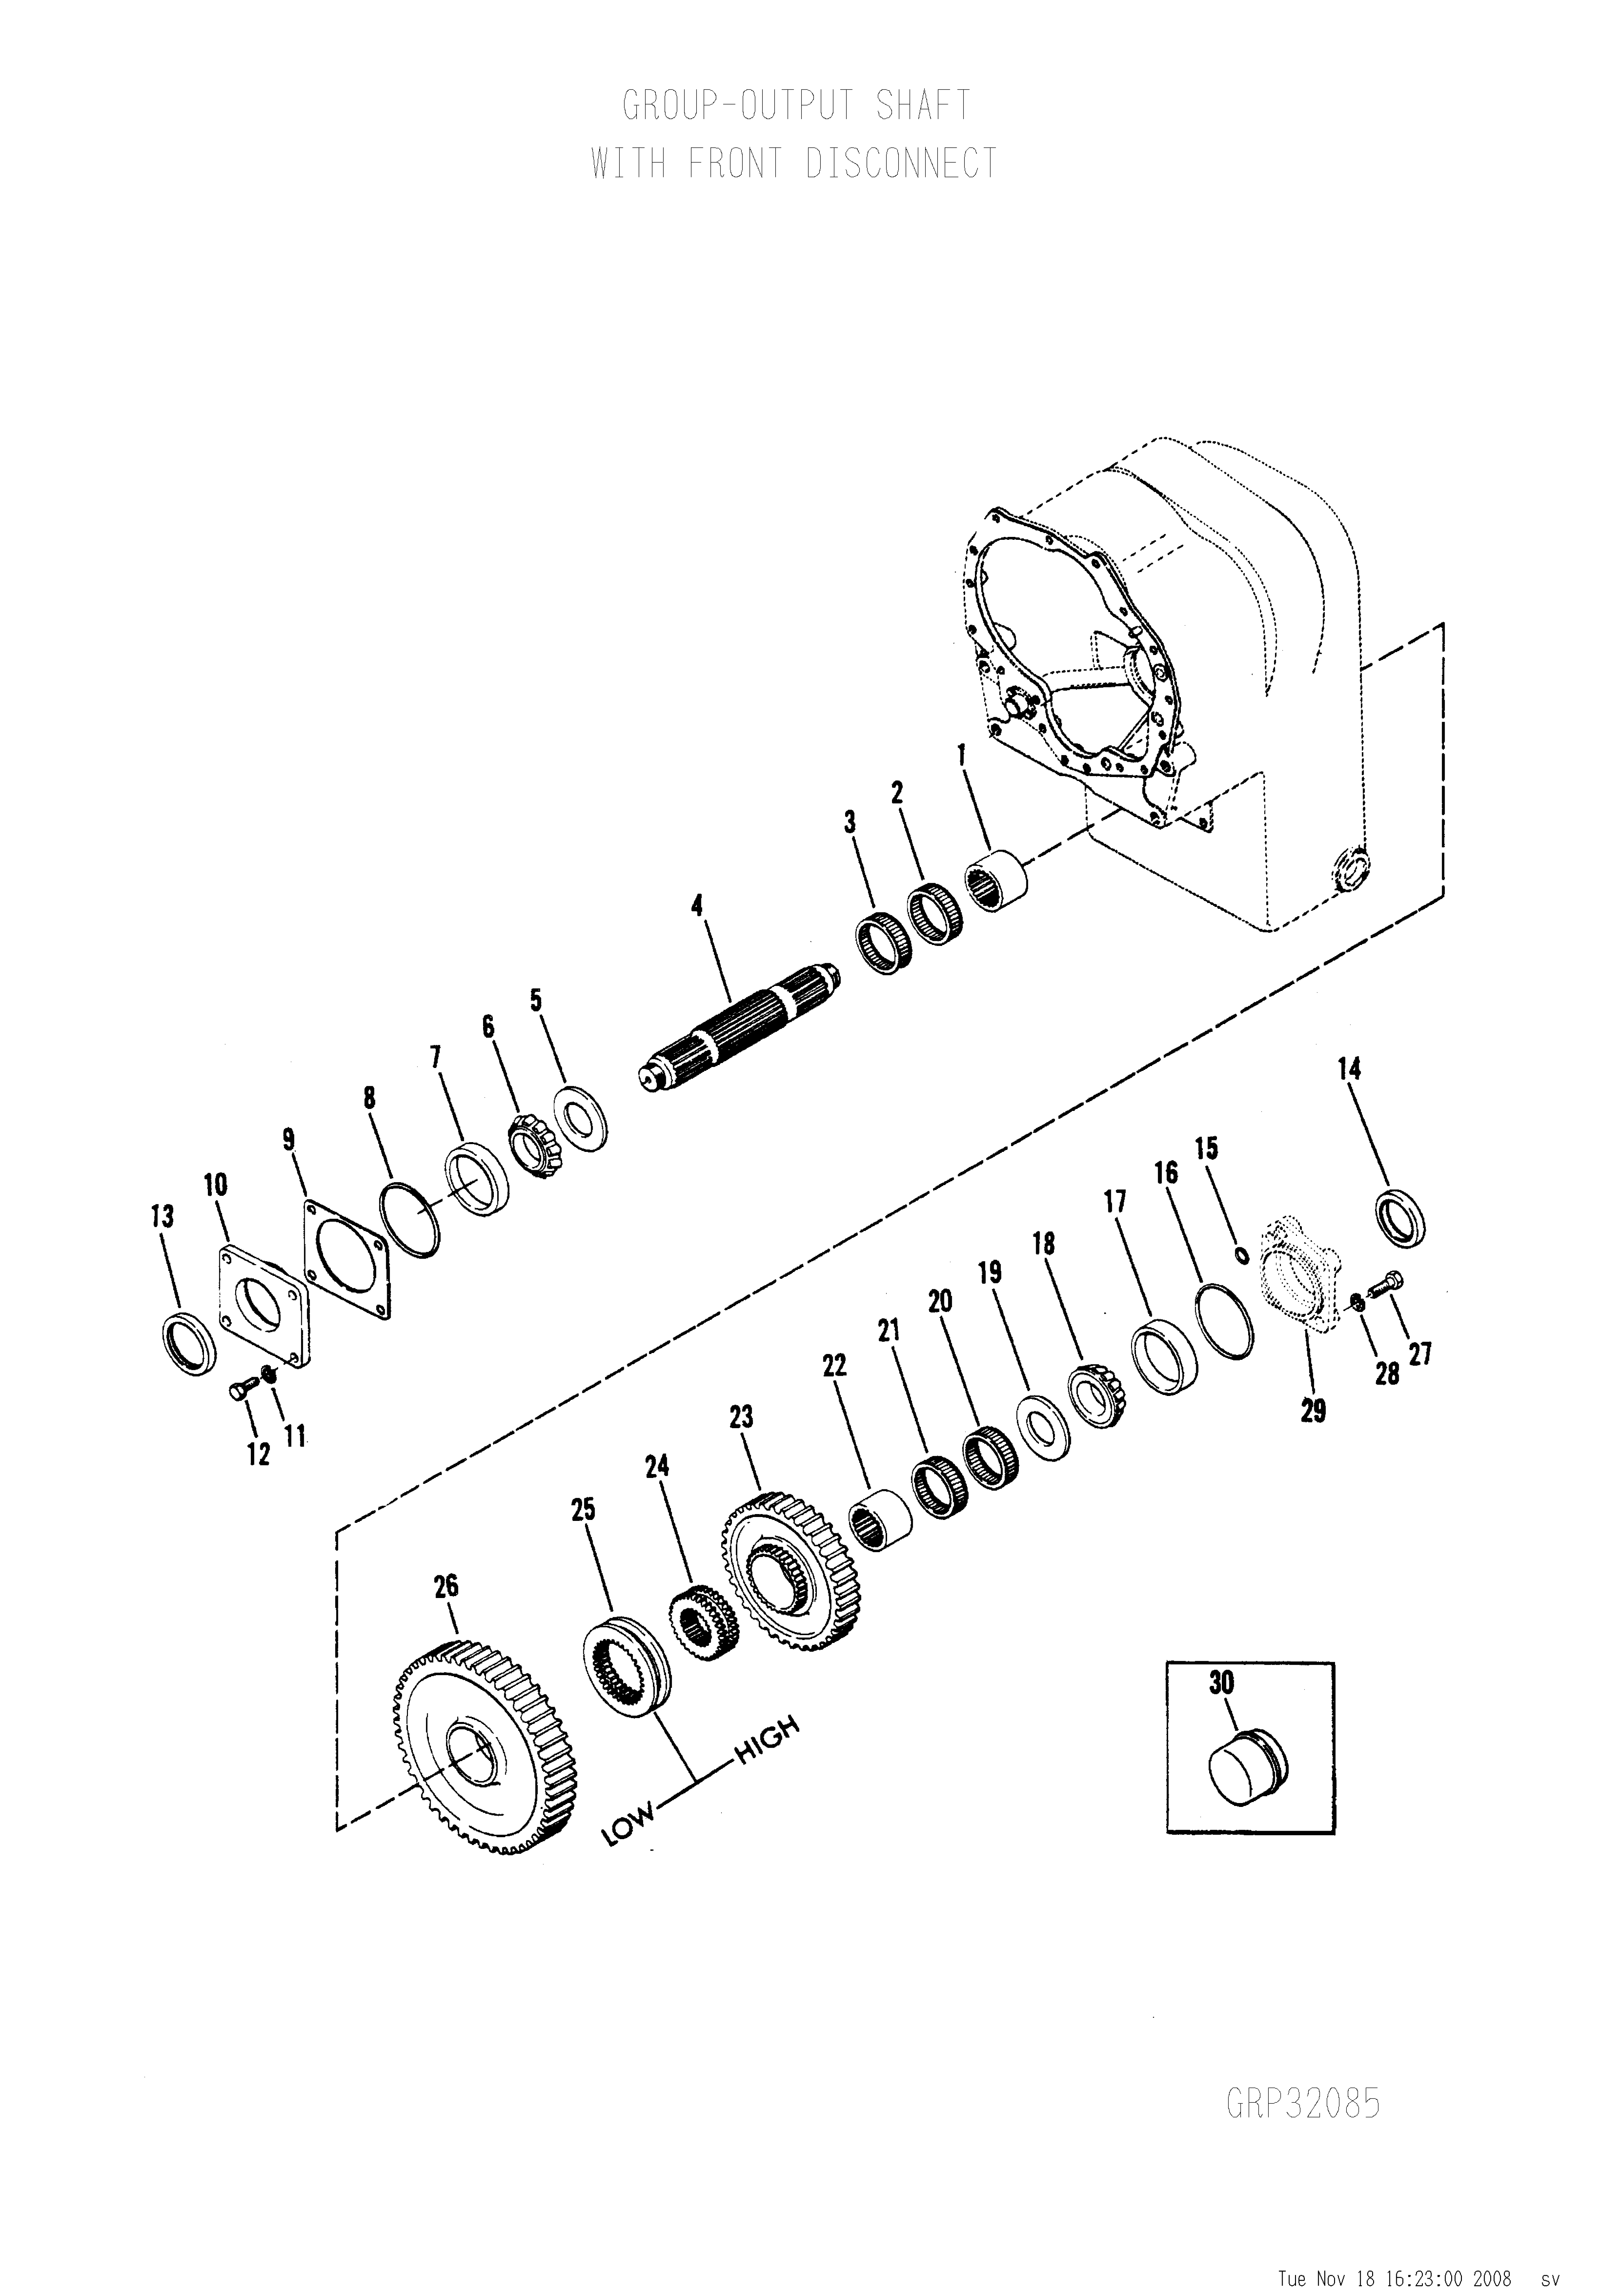 drawing for SCHOEMA, SCHOETTLER MASCHINENFABRIK K24.000250 - OIL SEAL (figure 1)